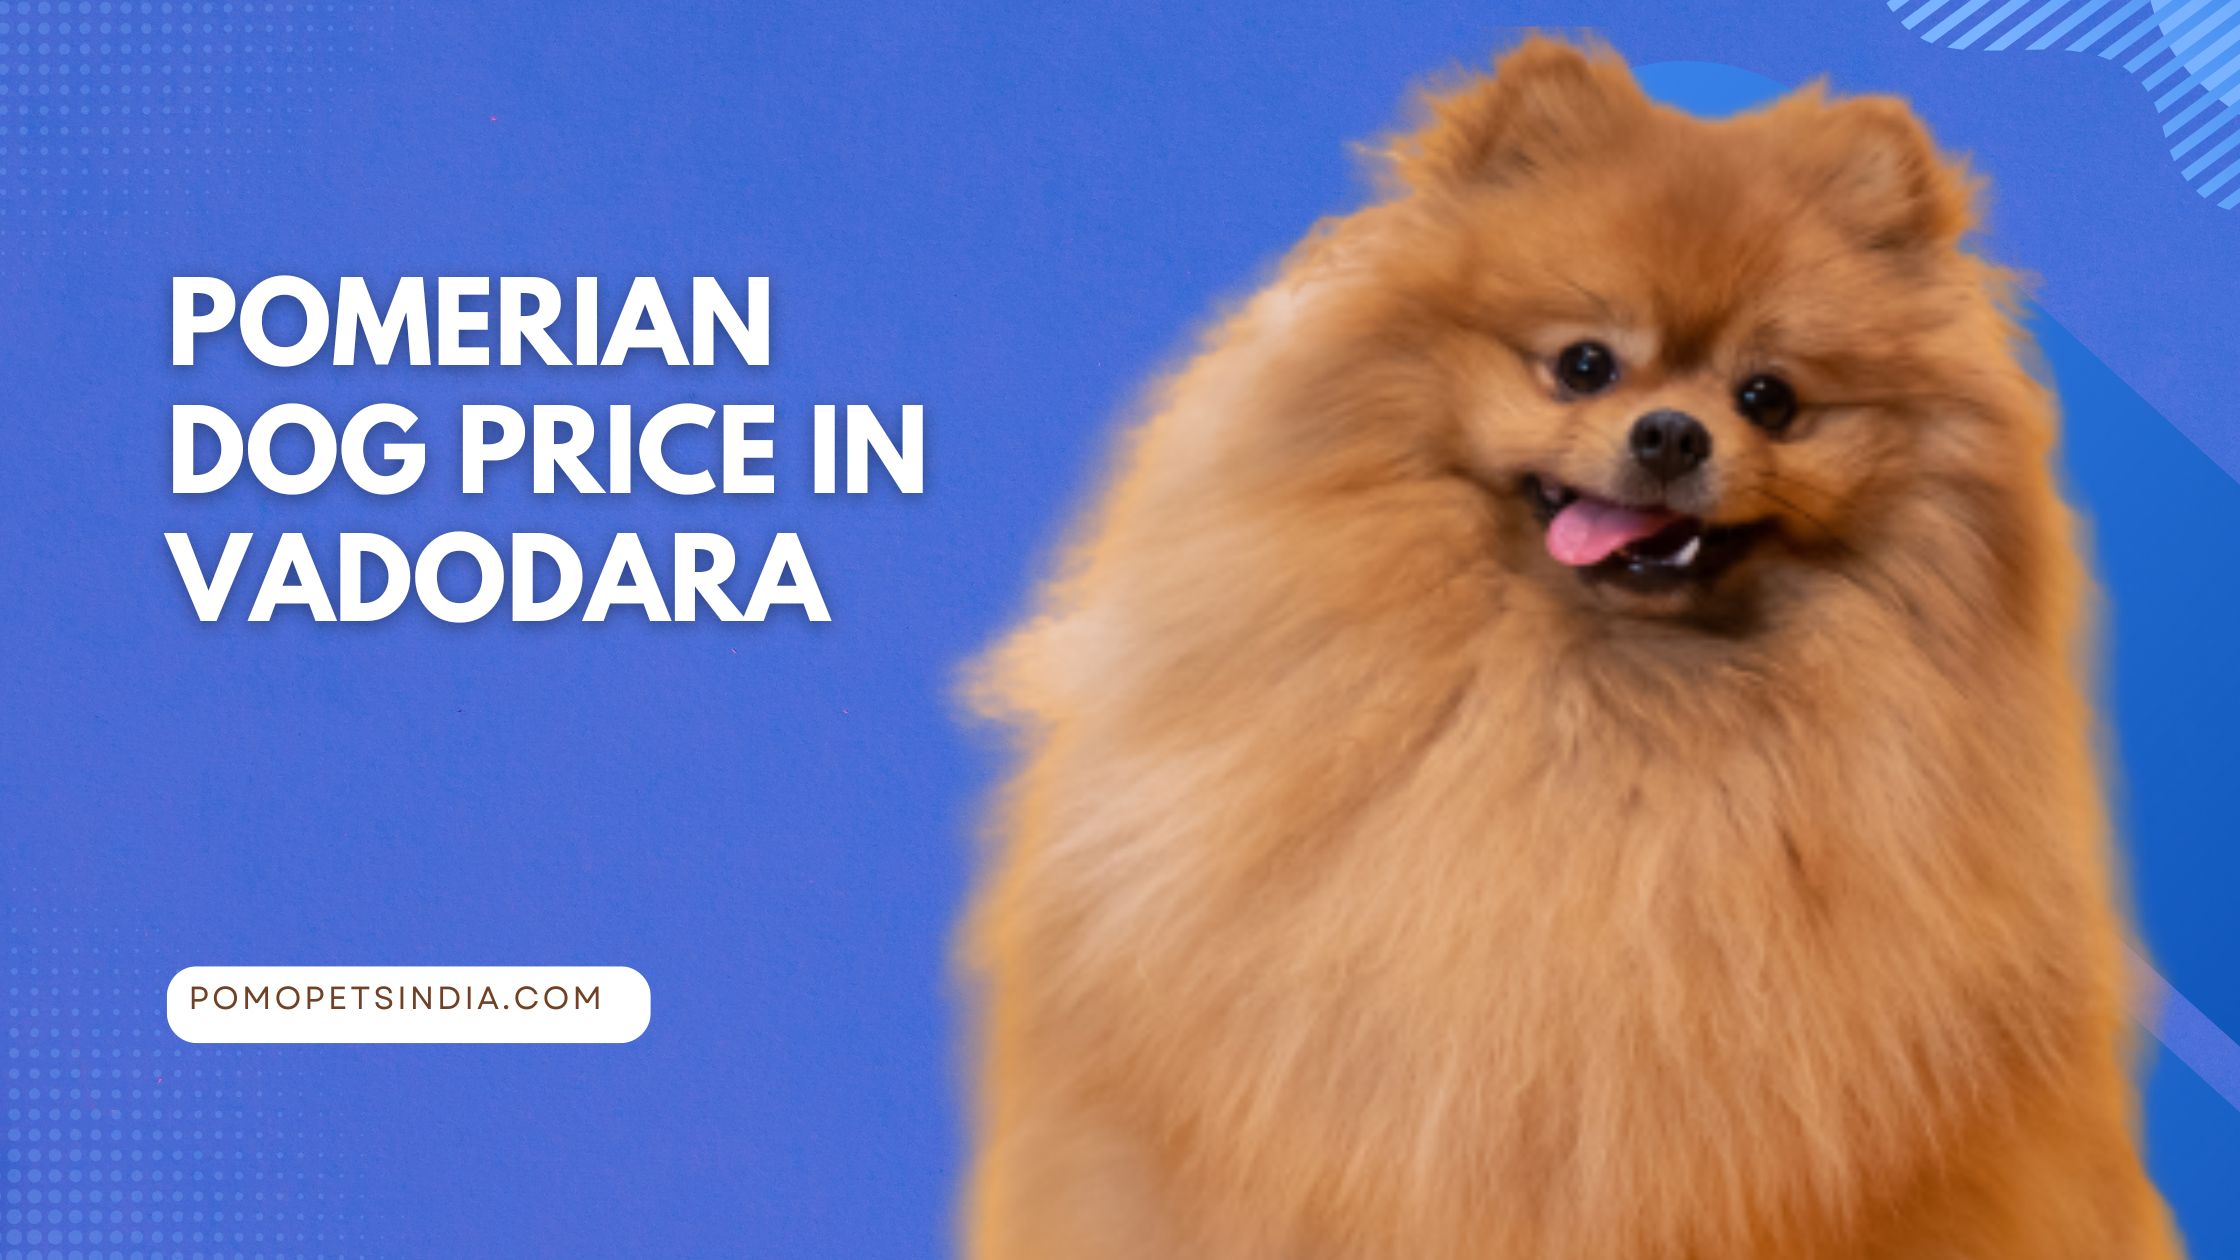 Pomeranian Dog Price In Vadodara Best Blog. 2023